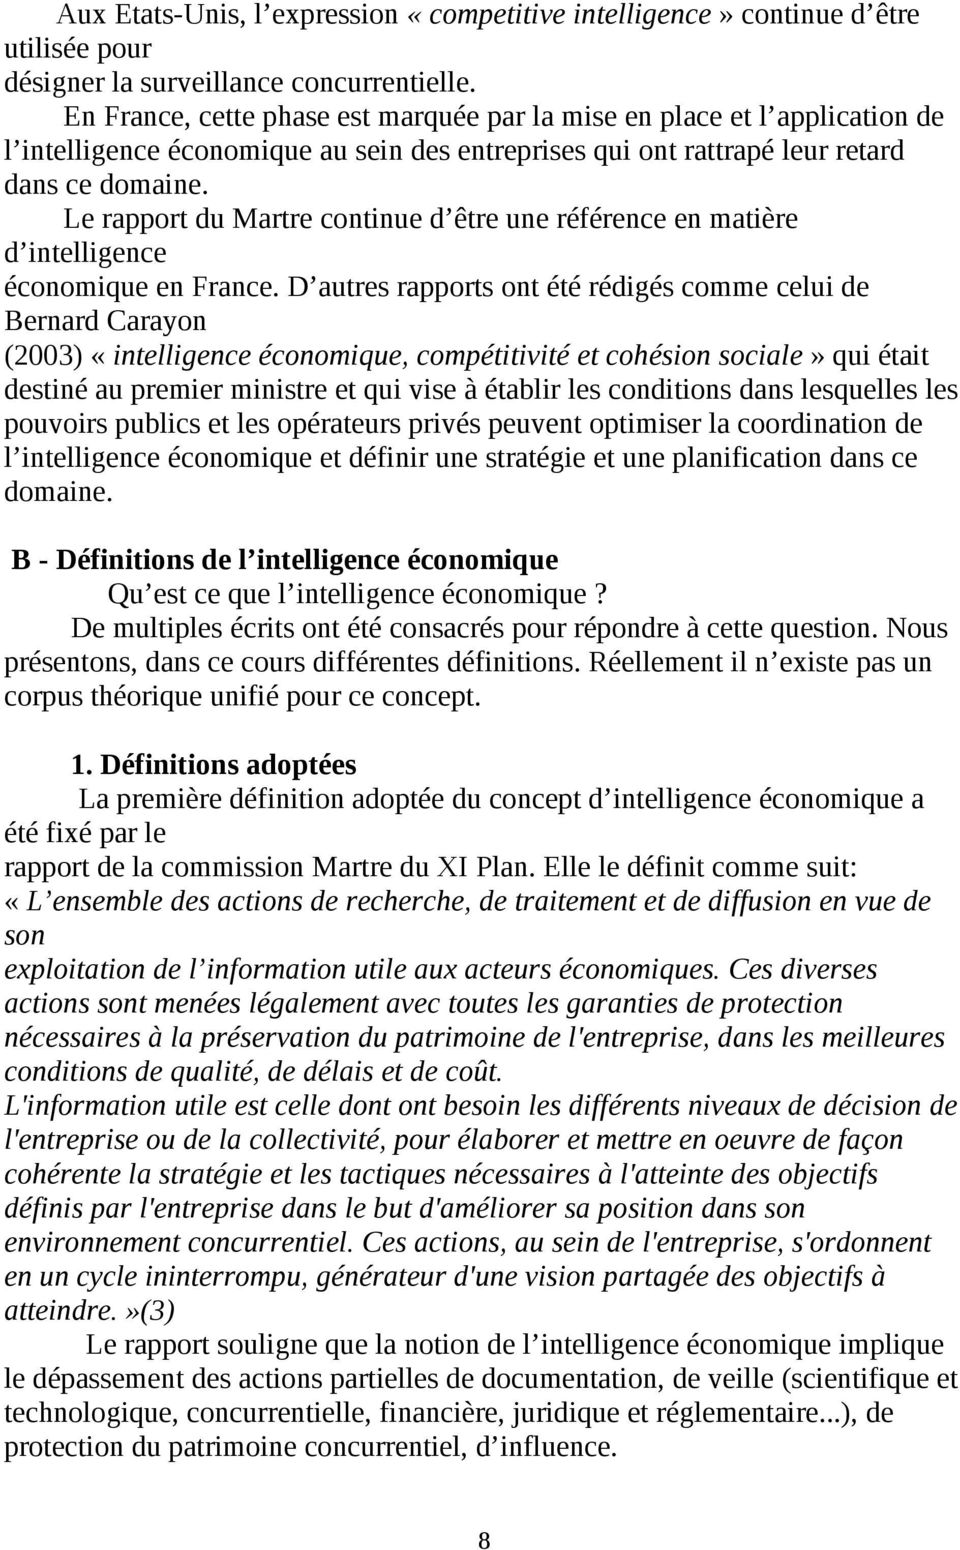 Le rapport du Martre continue d être une référence en matière d intelligence économique en France.